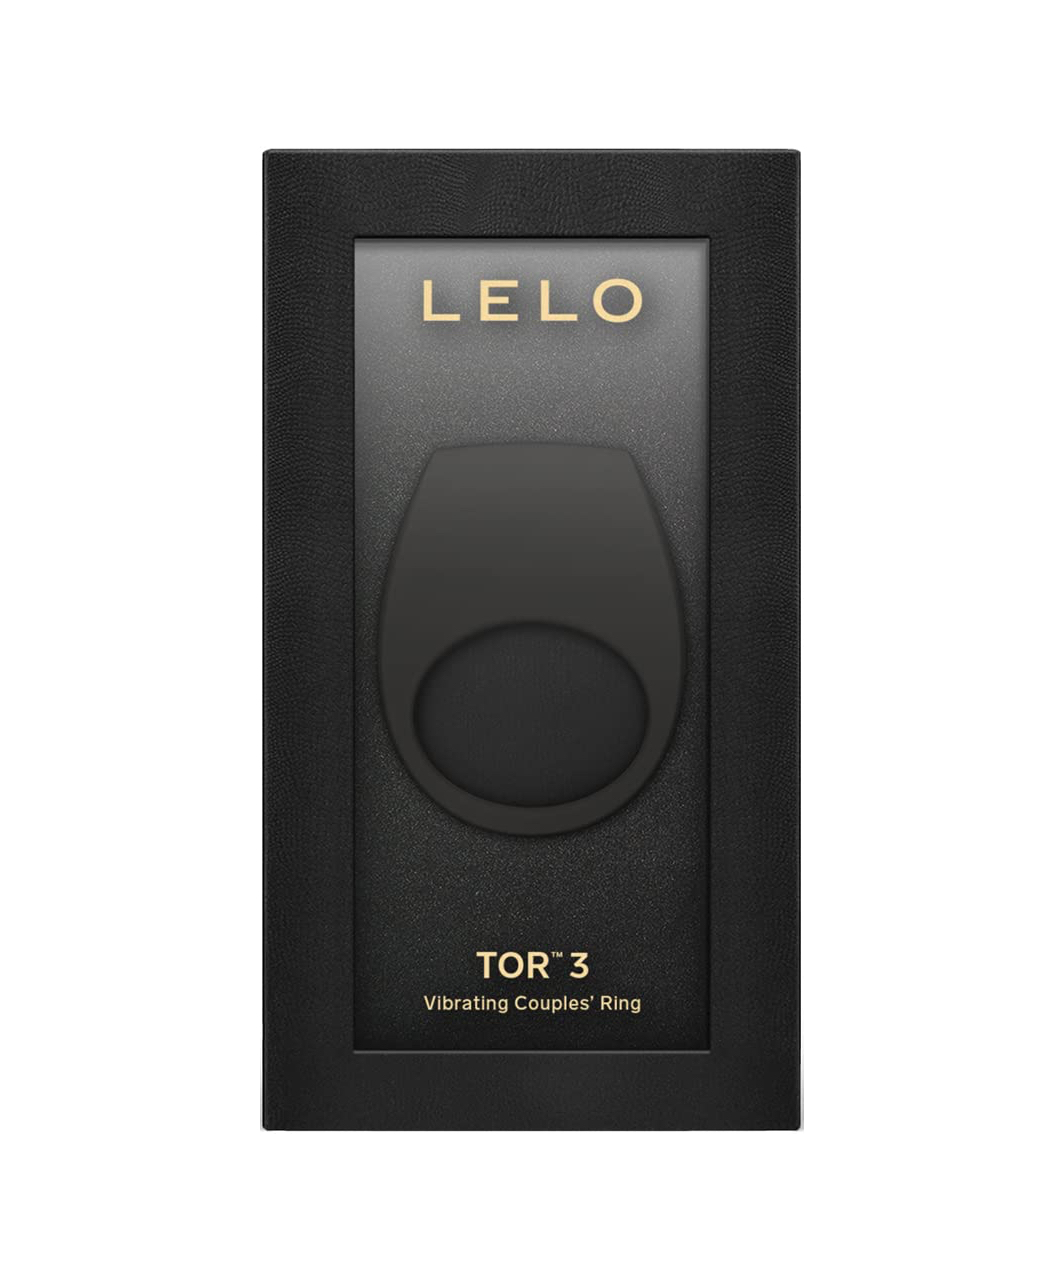 LELO Tor 3 Vibrating Couple's Ring